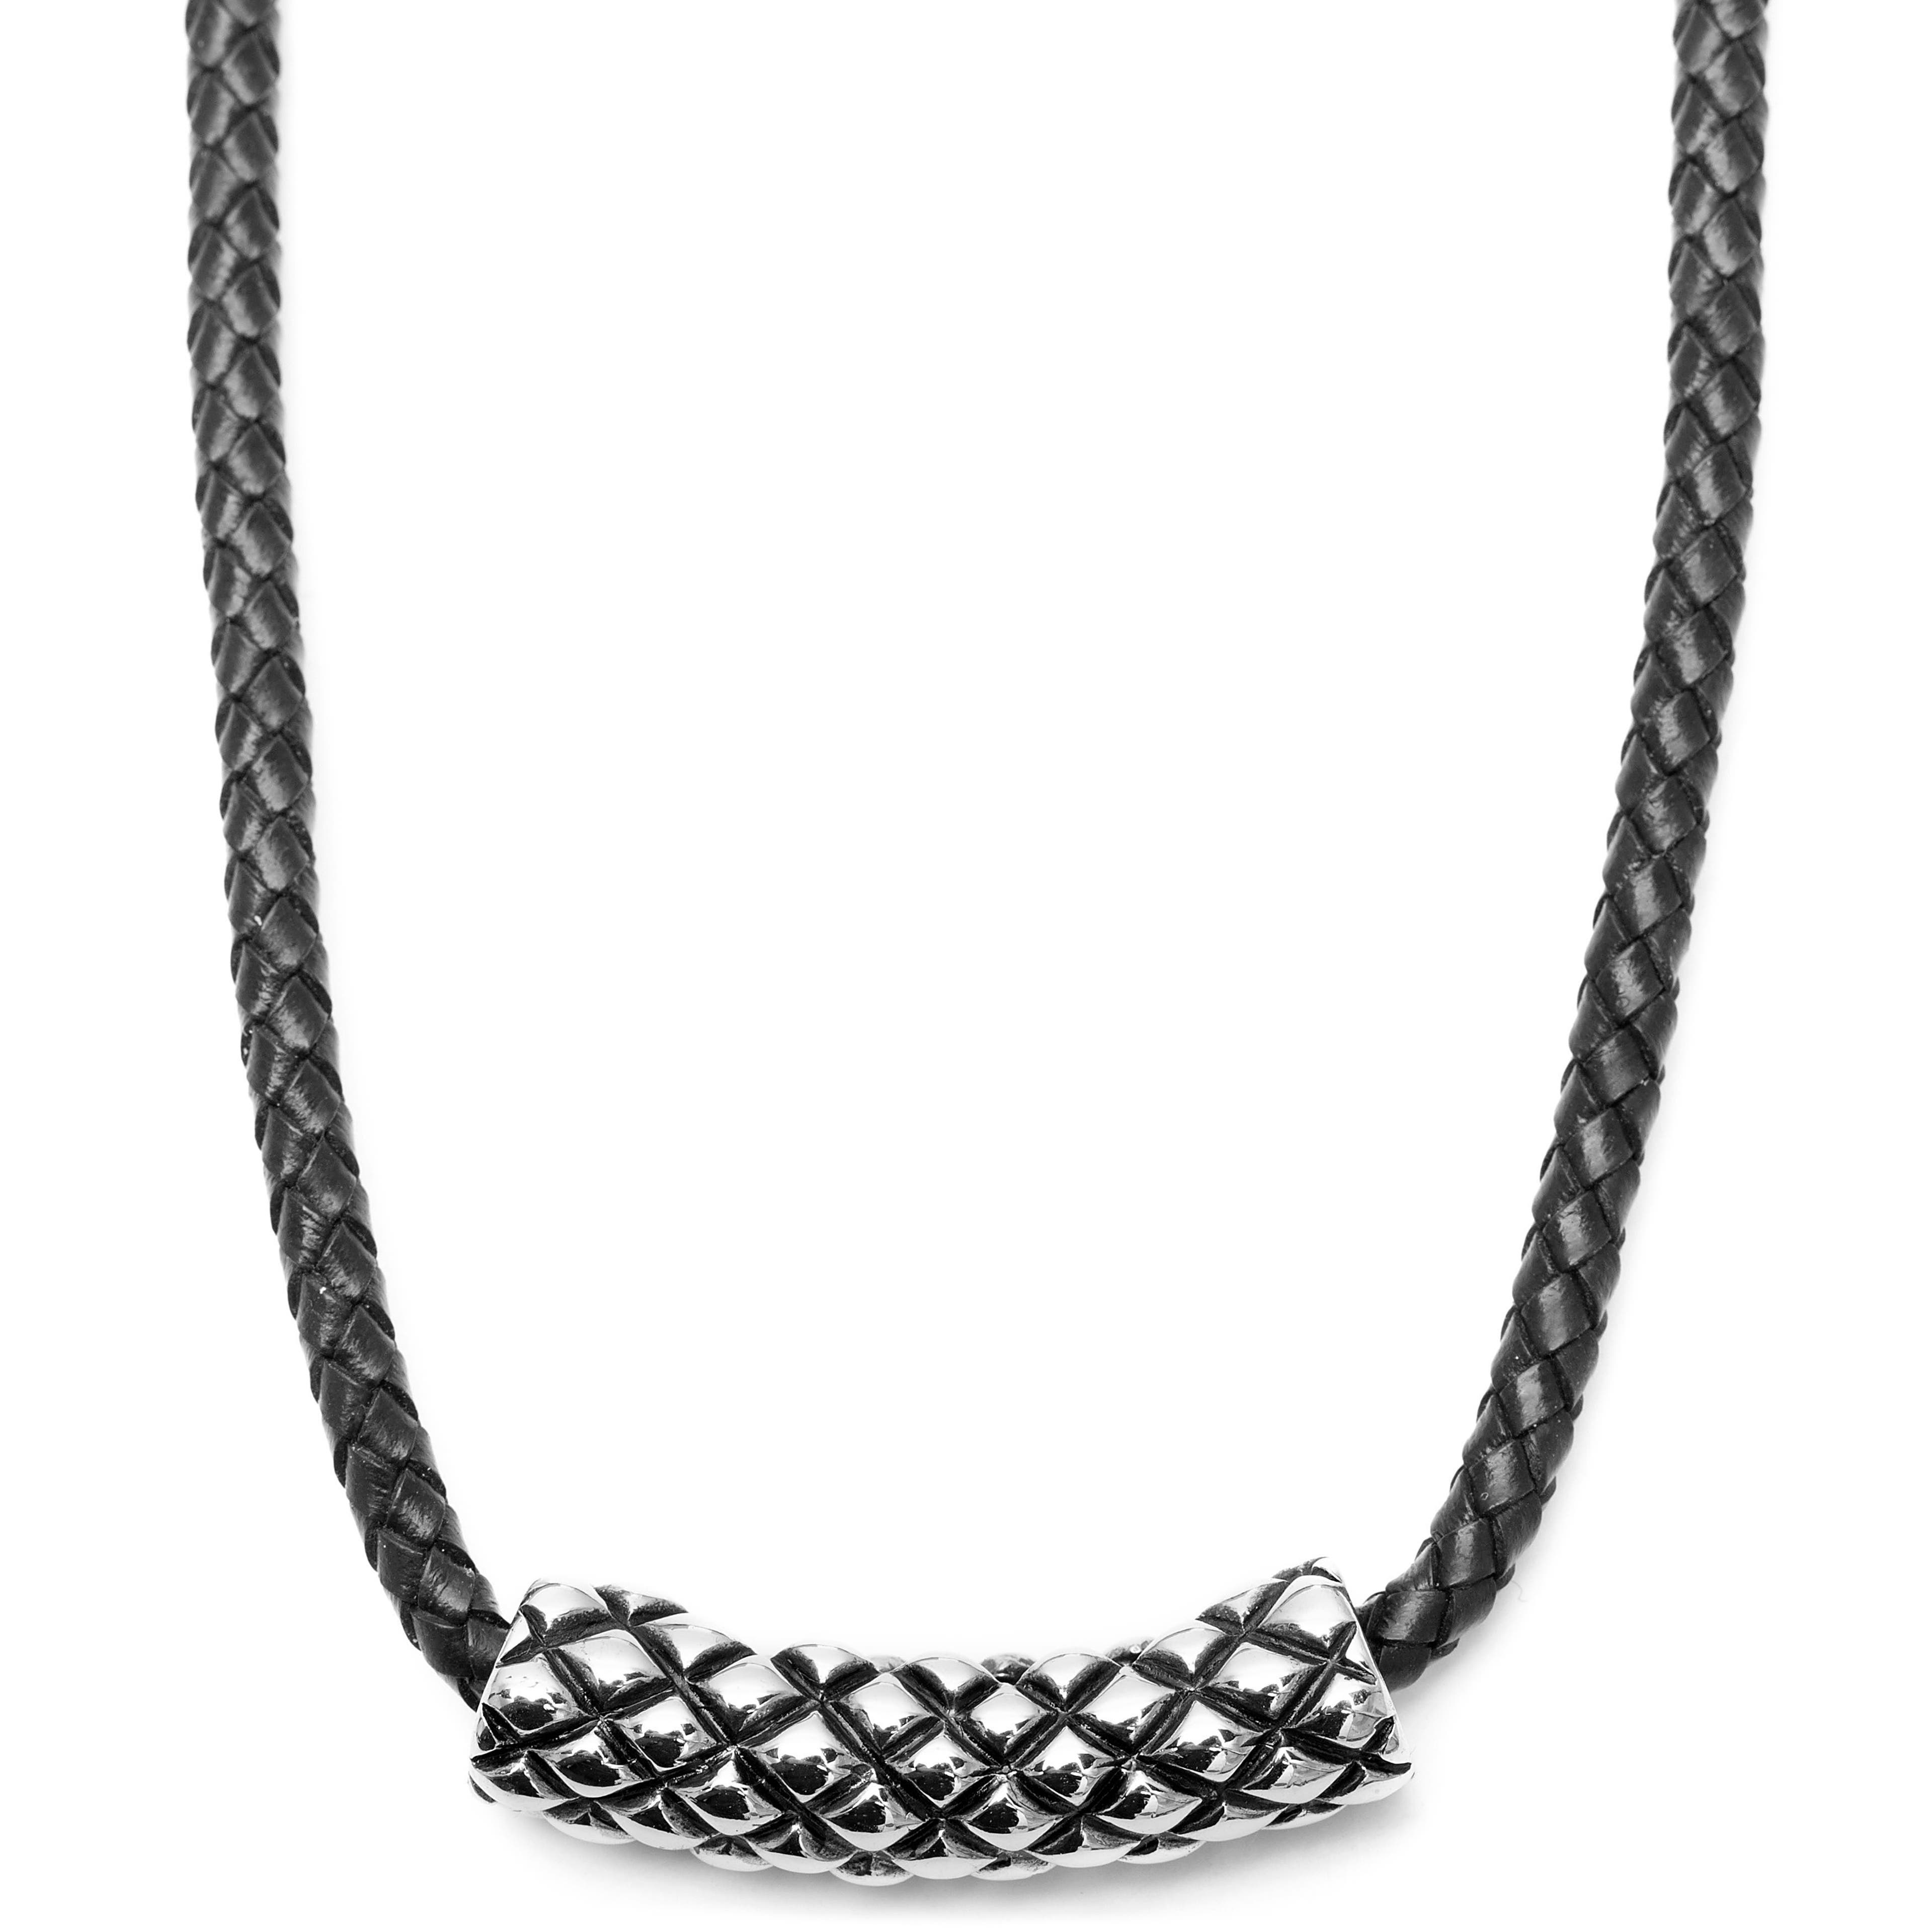  Černý kožený náhrdelník Criss Cross